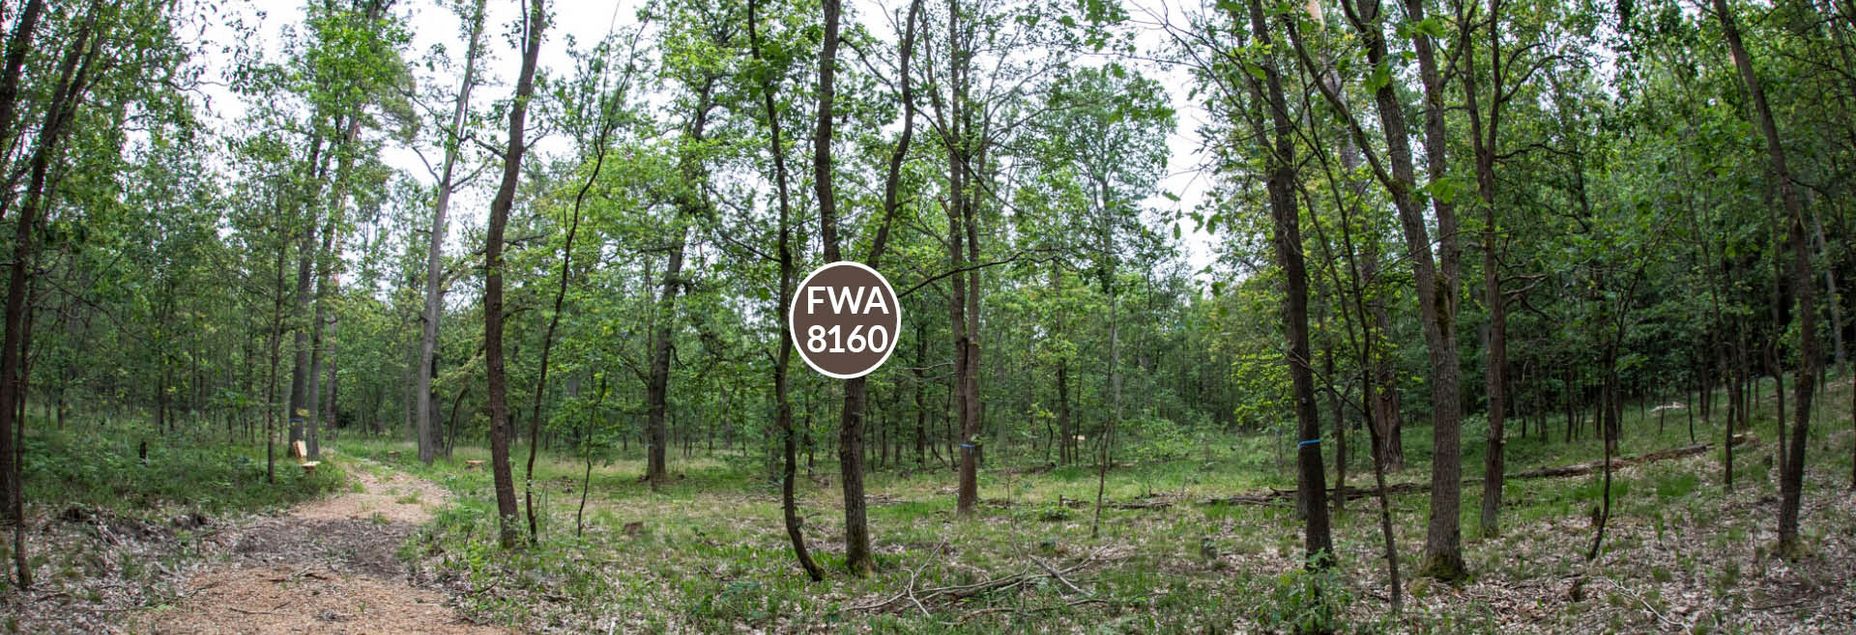 FriedWald-Onlineshop FWA 8160